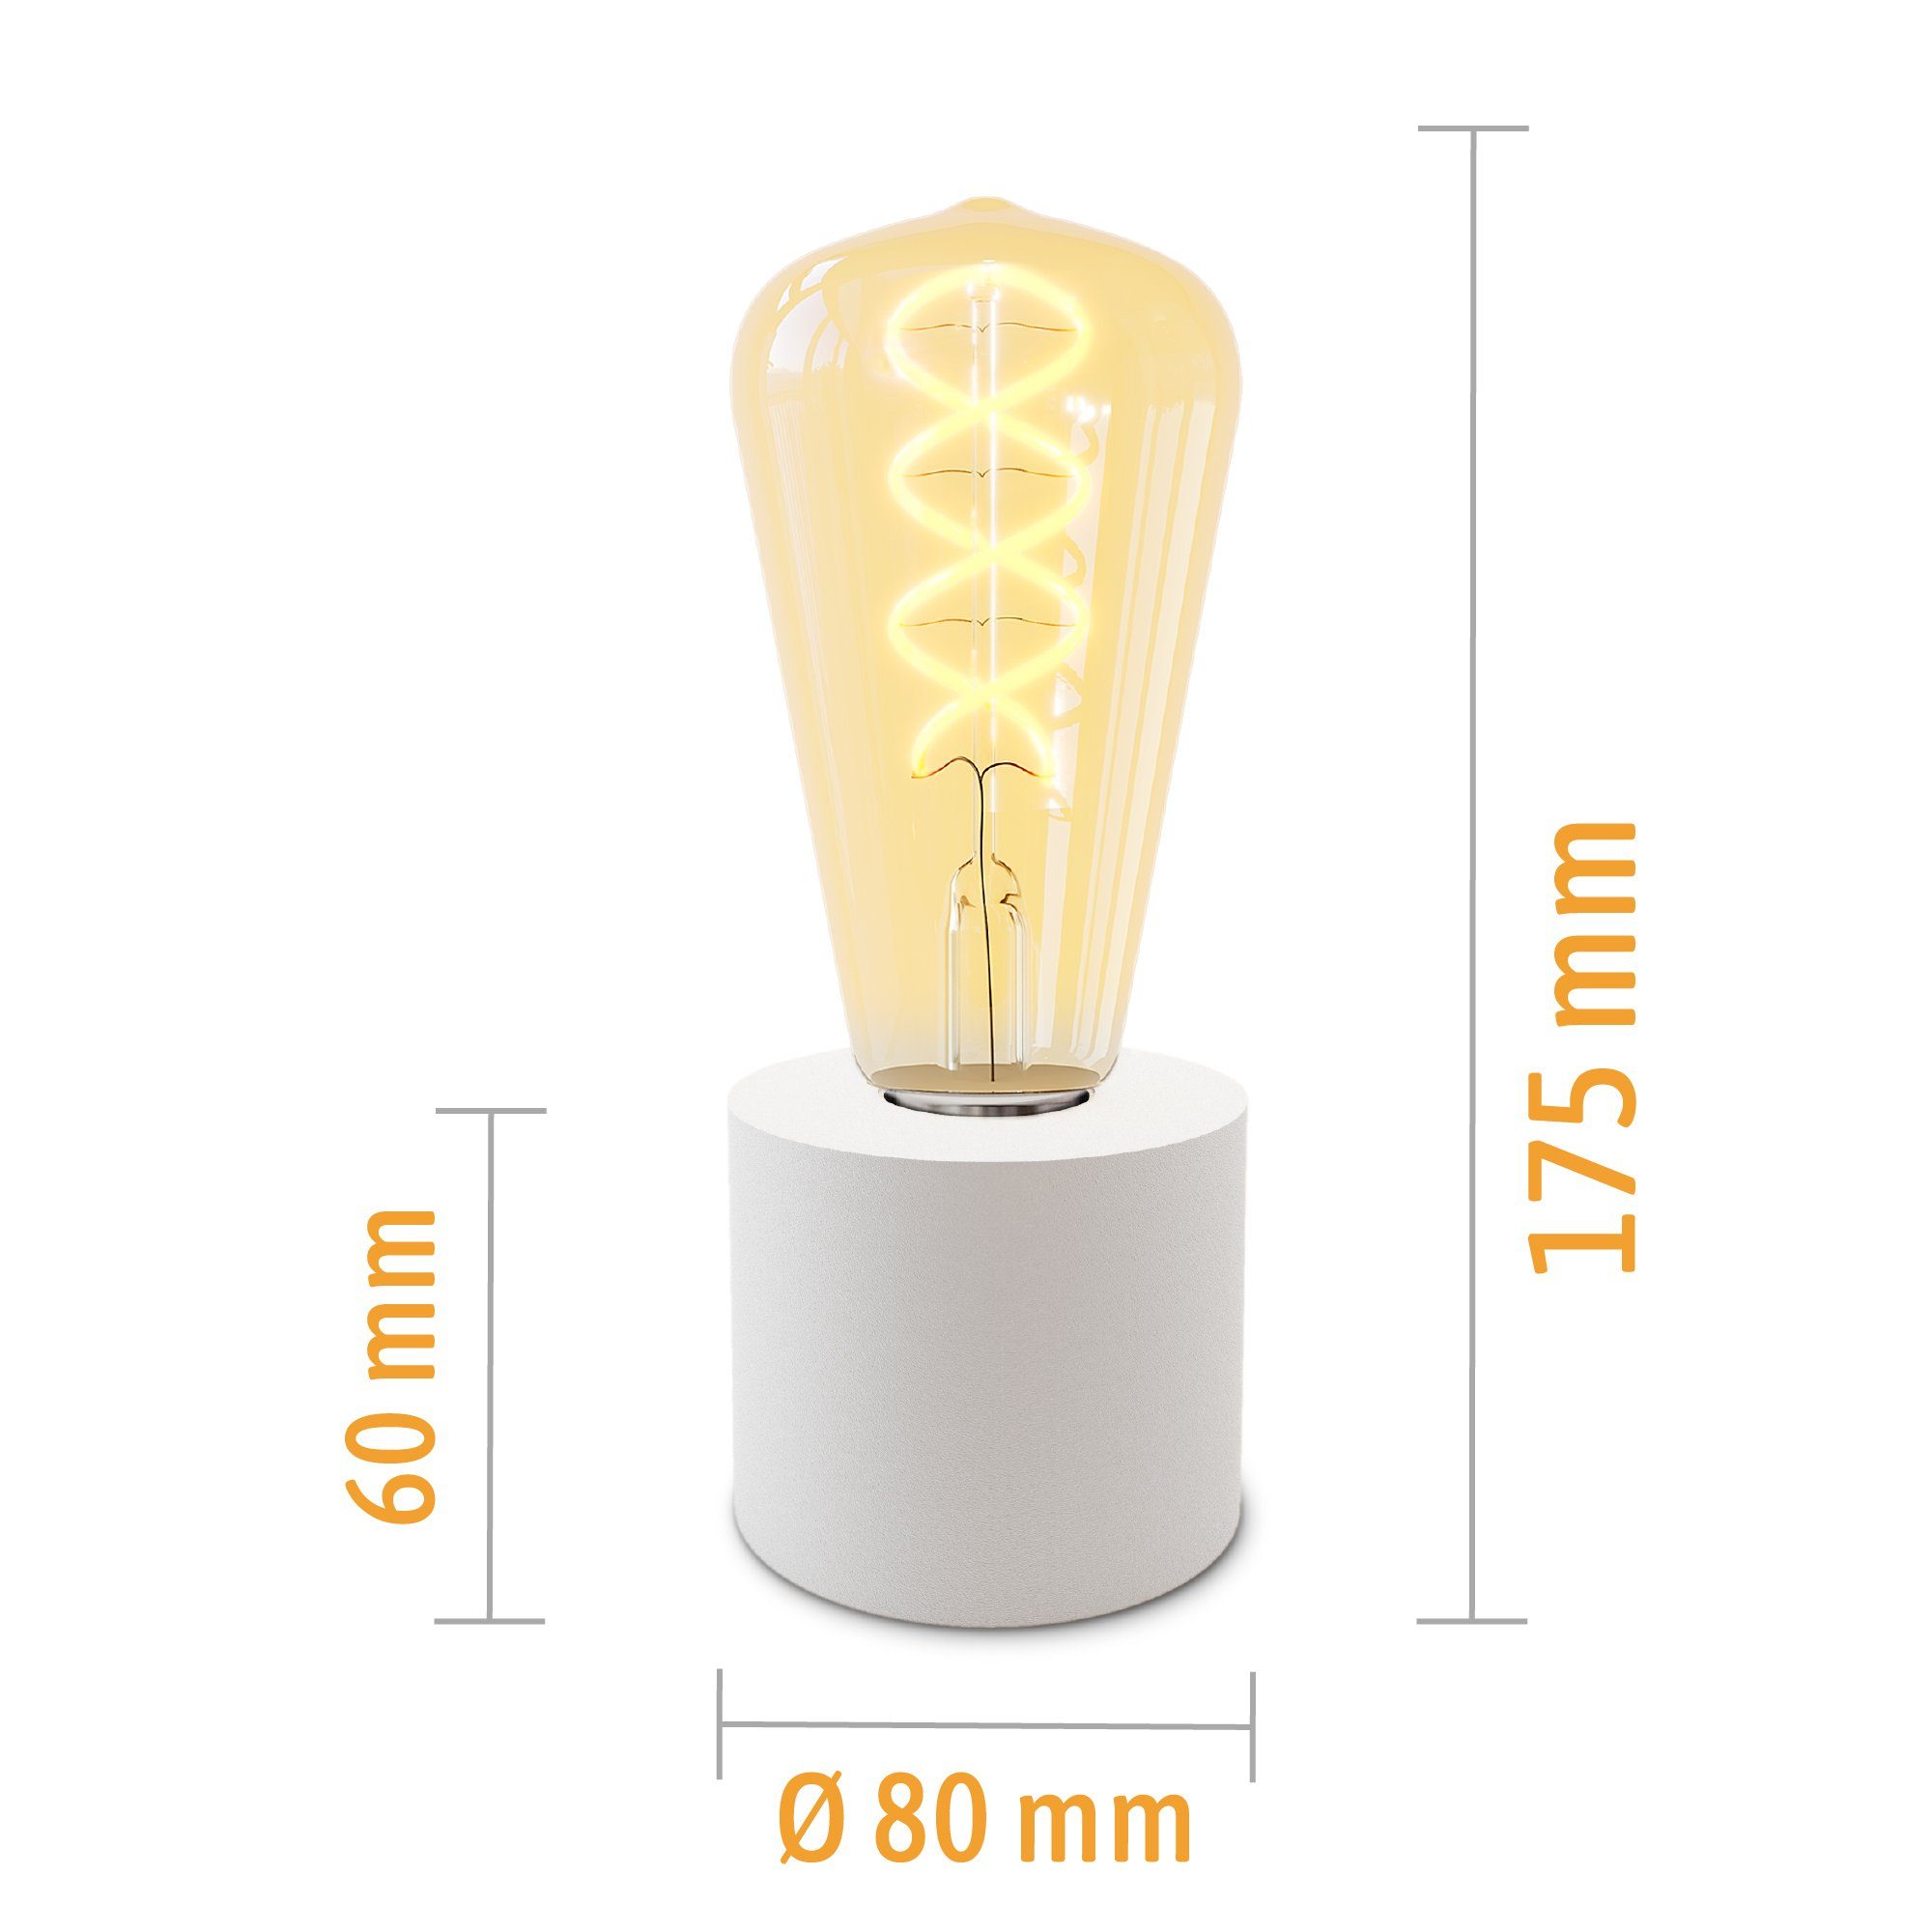 SSC-LUXon LED Bilderleuchte & Edison weiss Kabel Warmweiß Tischleuchte & LED NAMBI Stecker mit E27, Wand